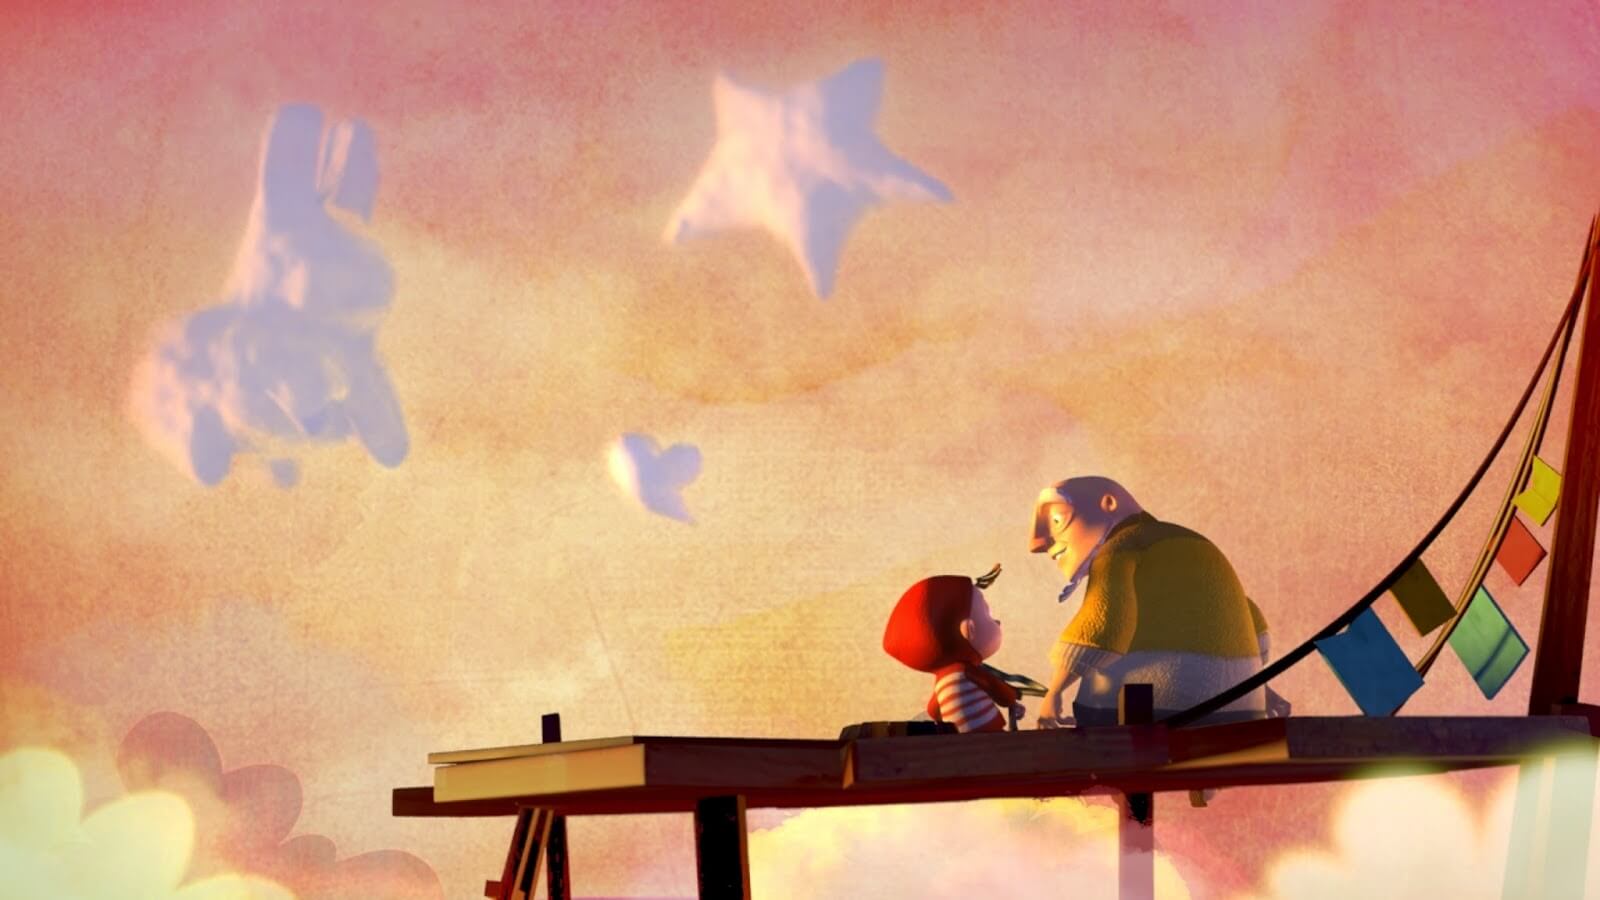 revistaprosaversoearte.com - Uma encantadora história sobre um avô que ensina um neto a fazer nuvens...